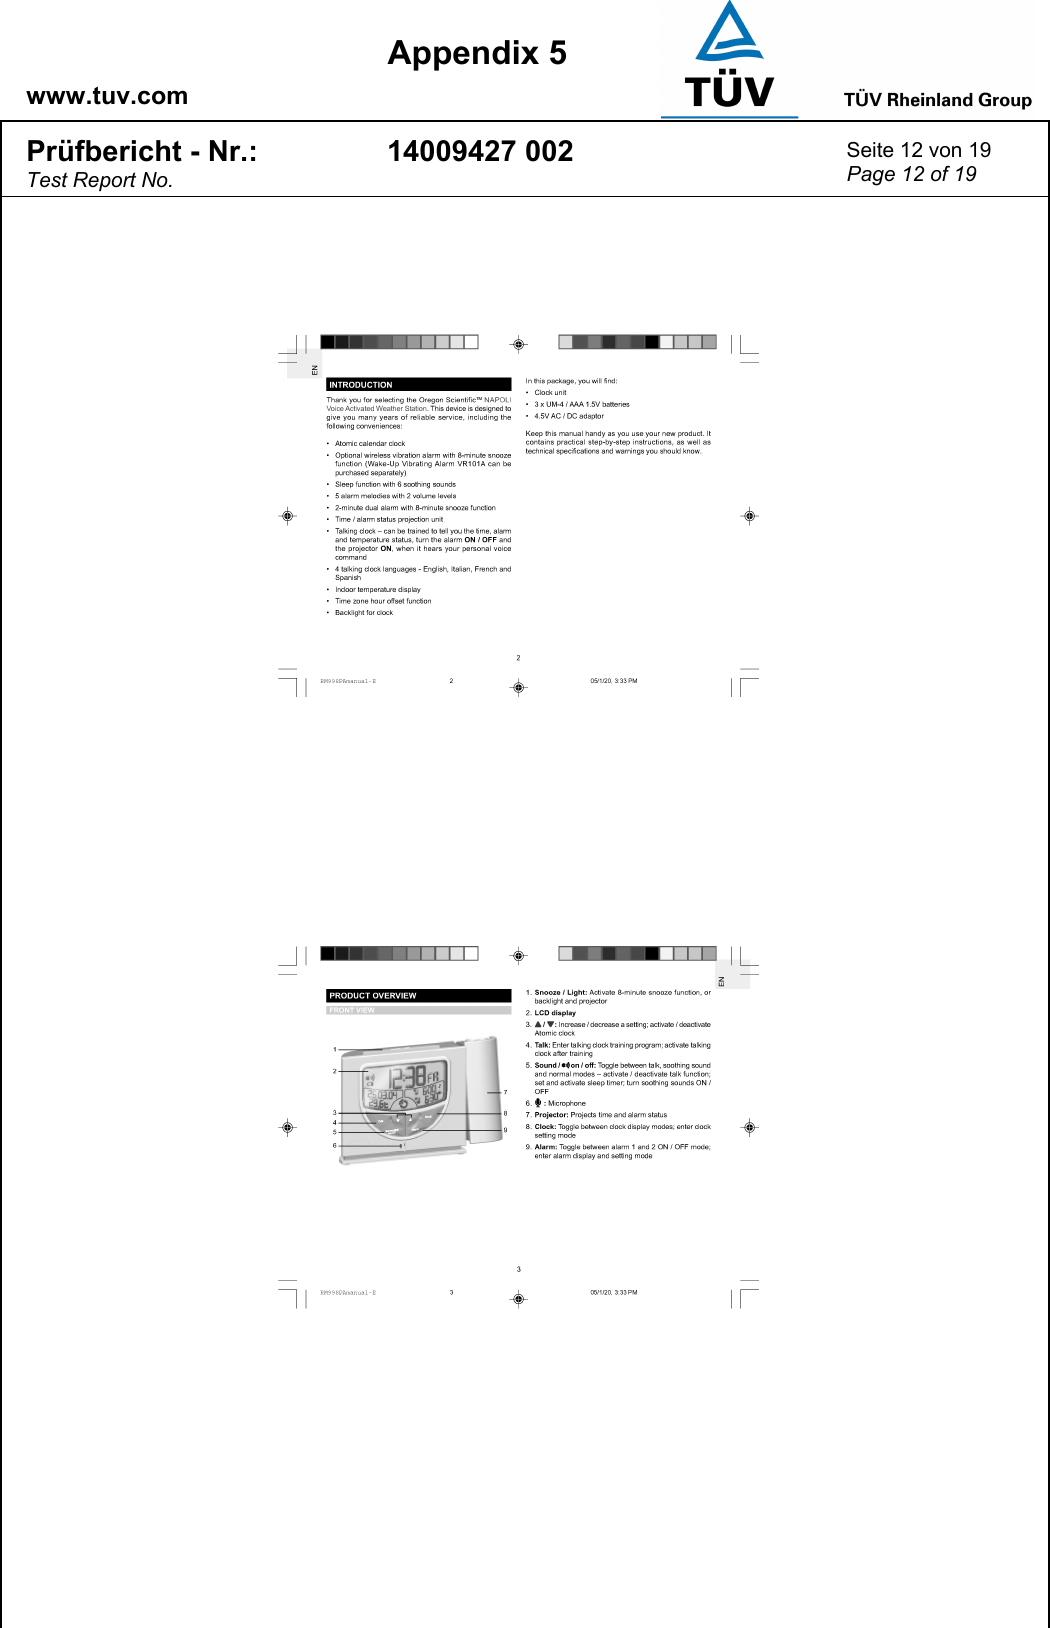    www.tuv.com  Appendix 5 Prüfbericht - Nr.: Test Report No. 14009427 002  Seite 12 von 19 Page 12 of 19   